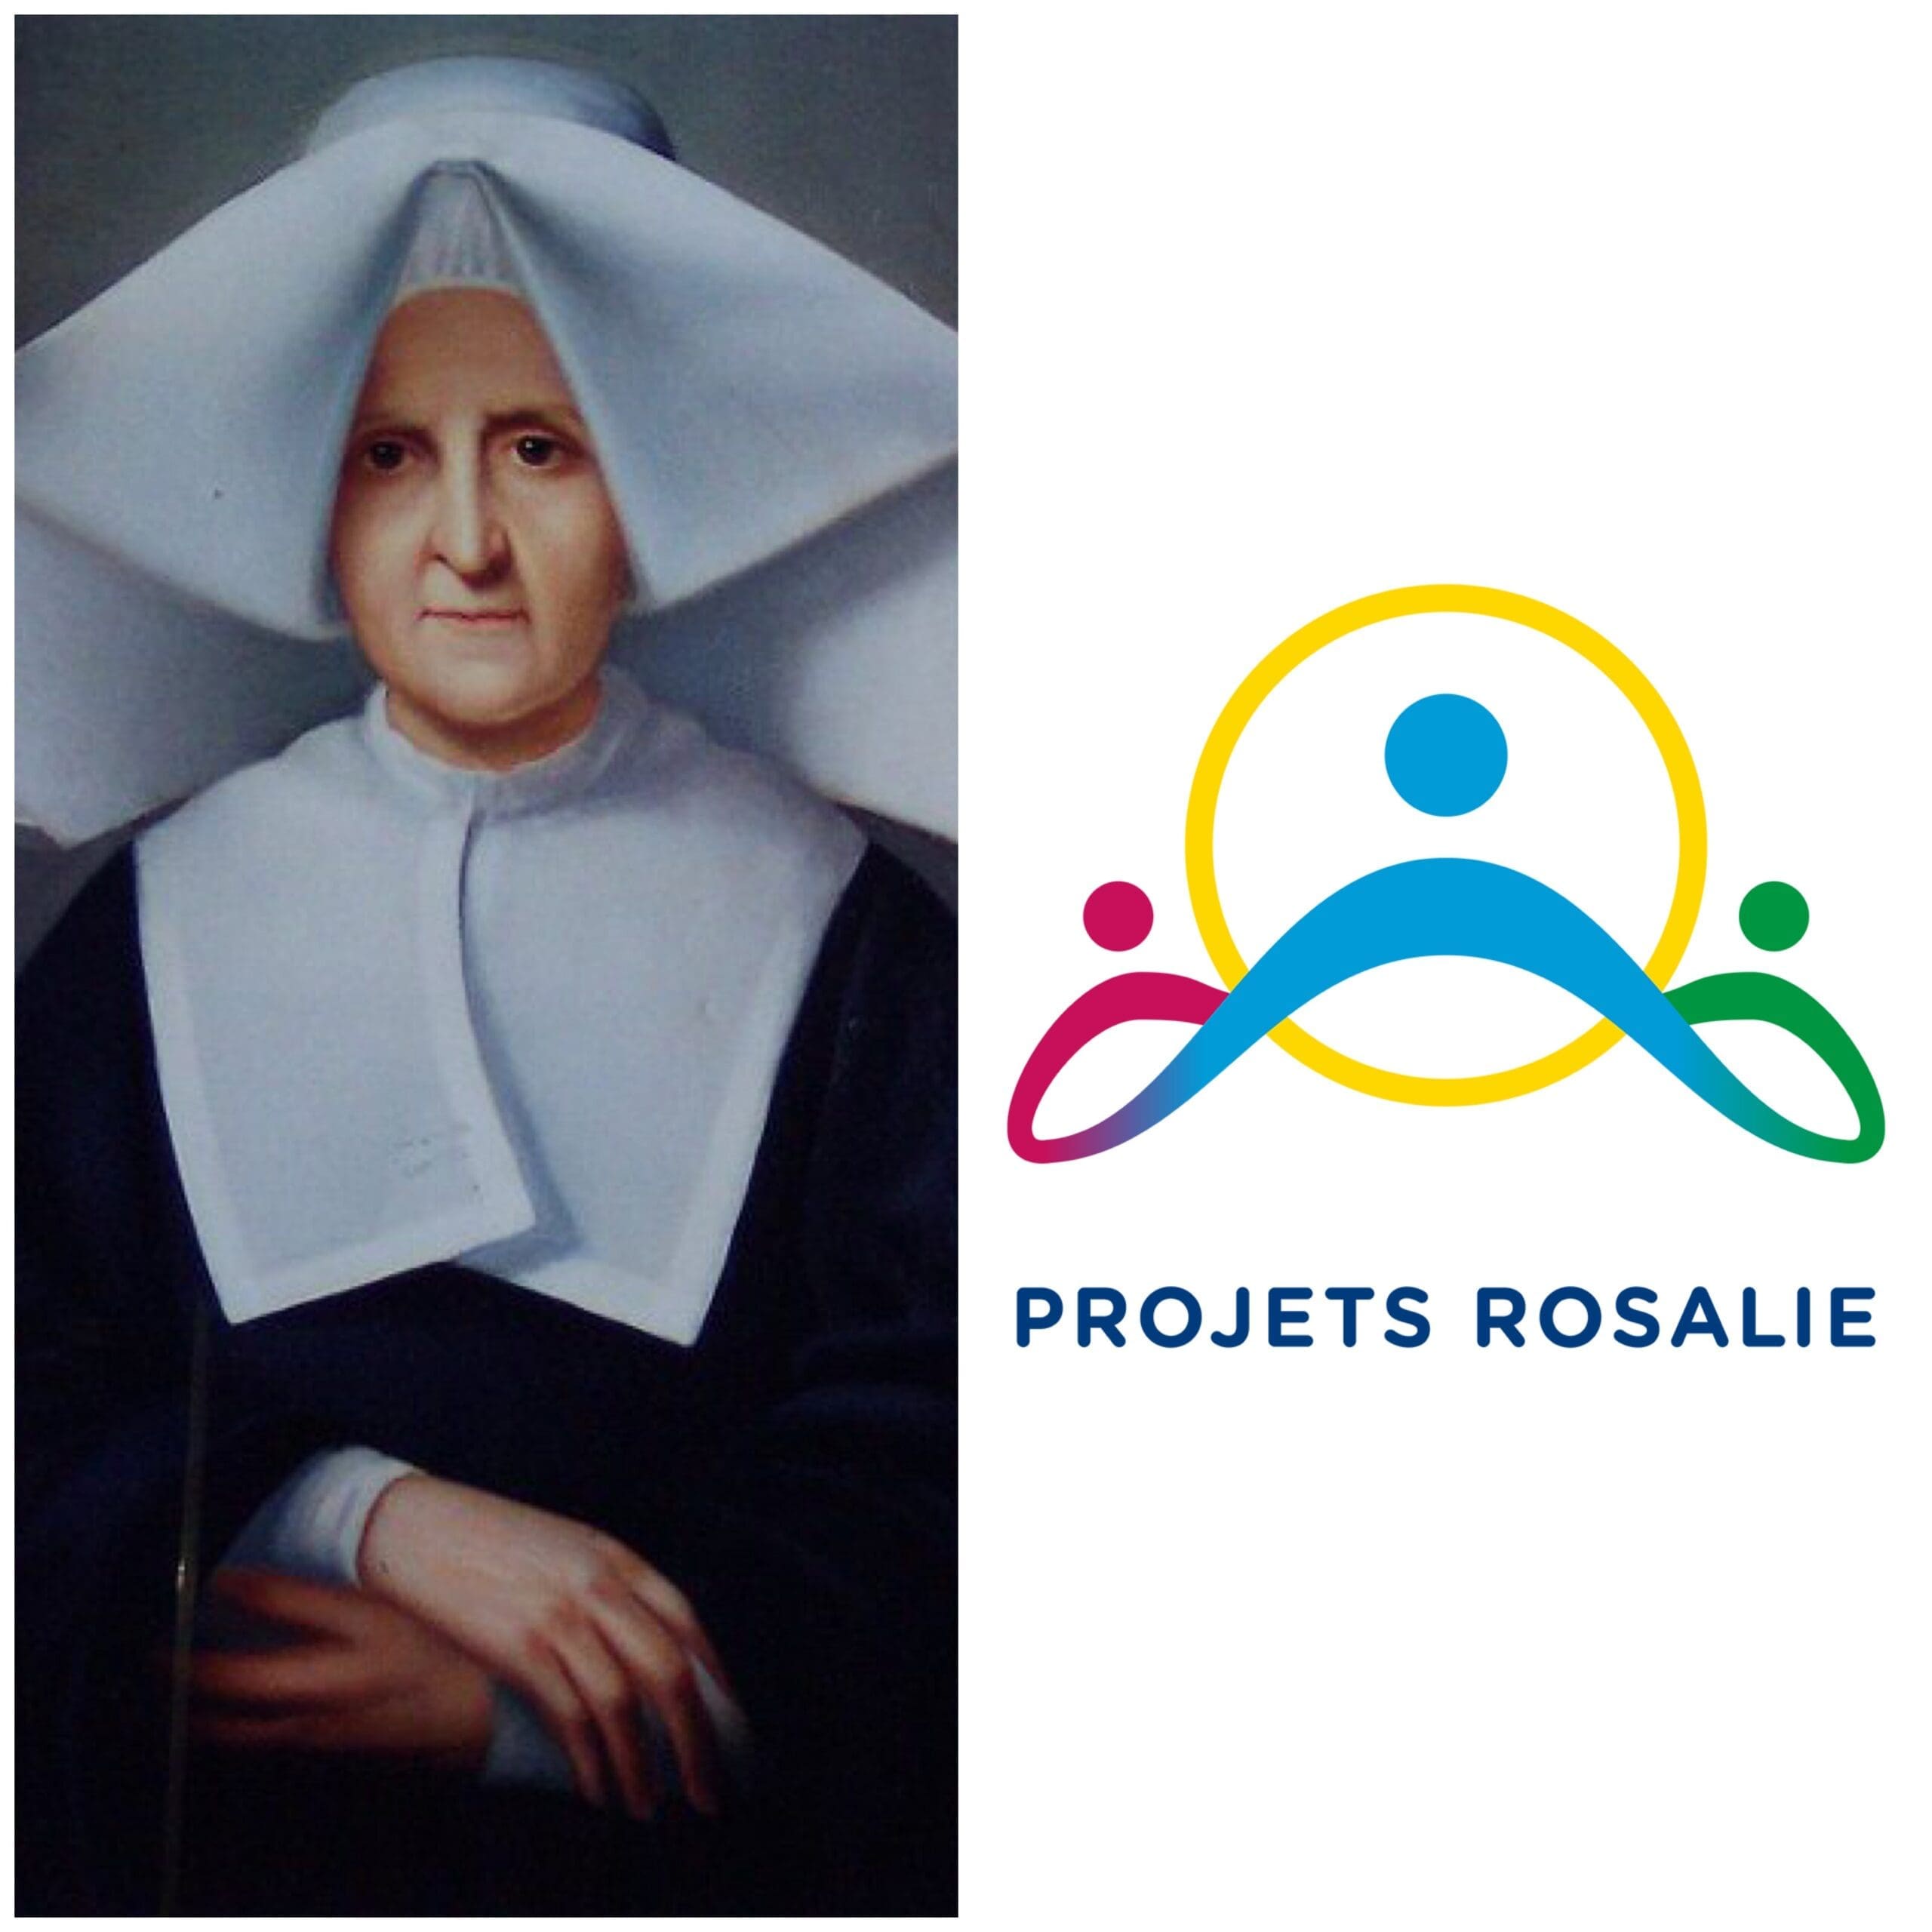 Sœur Rosalie Rendu (1786-1856) et les Projets Rosalie L’audace au service de la charité